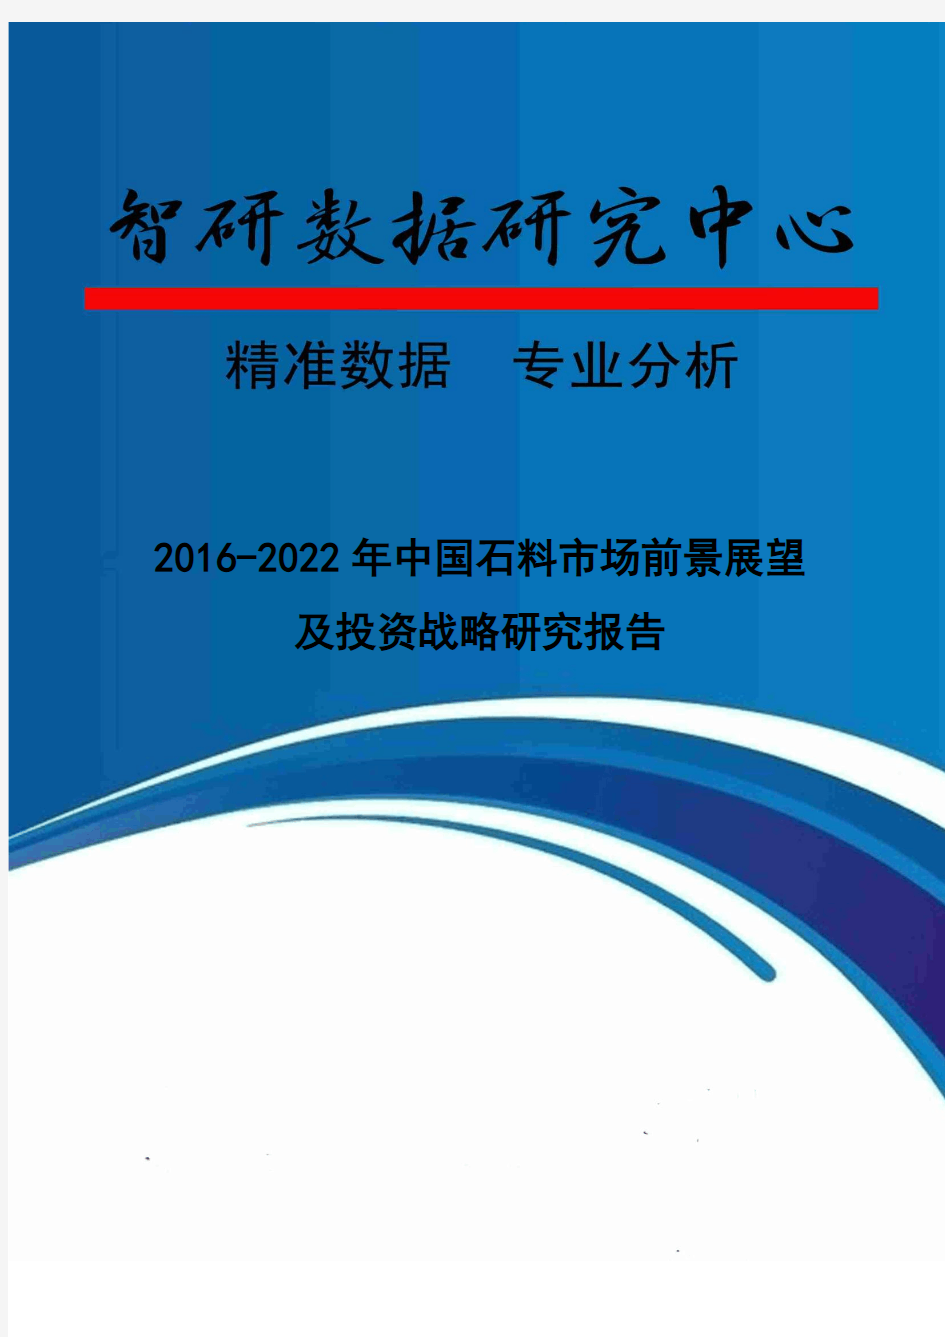 2016-2022年中国石料市场前景展望及投资战略研究报告